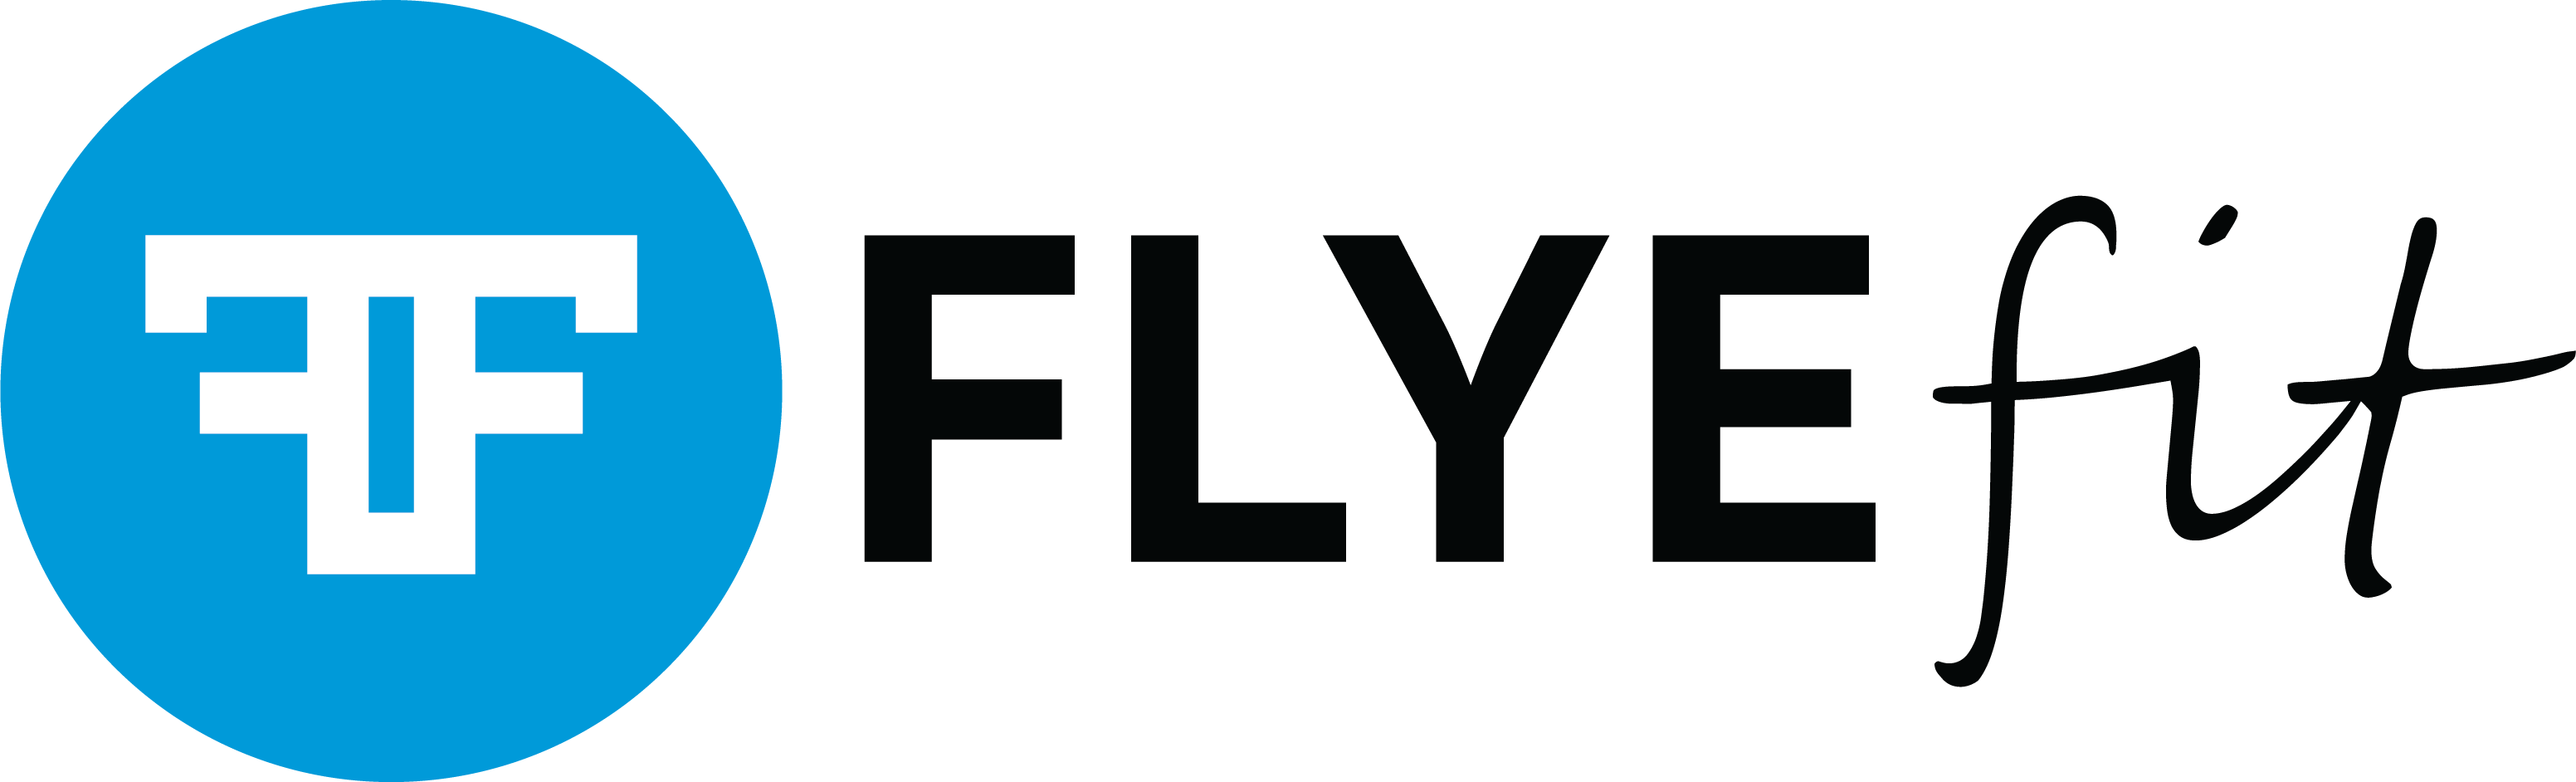 FlyeFit Gym